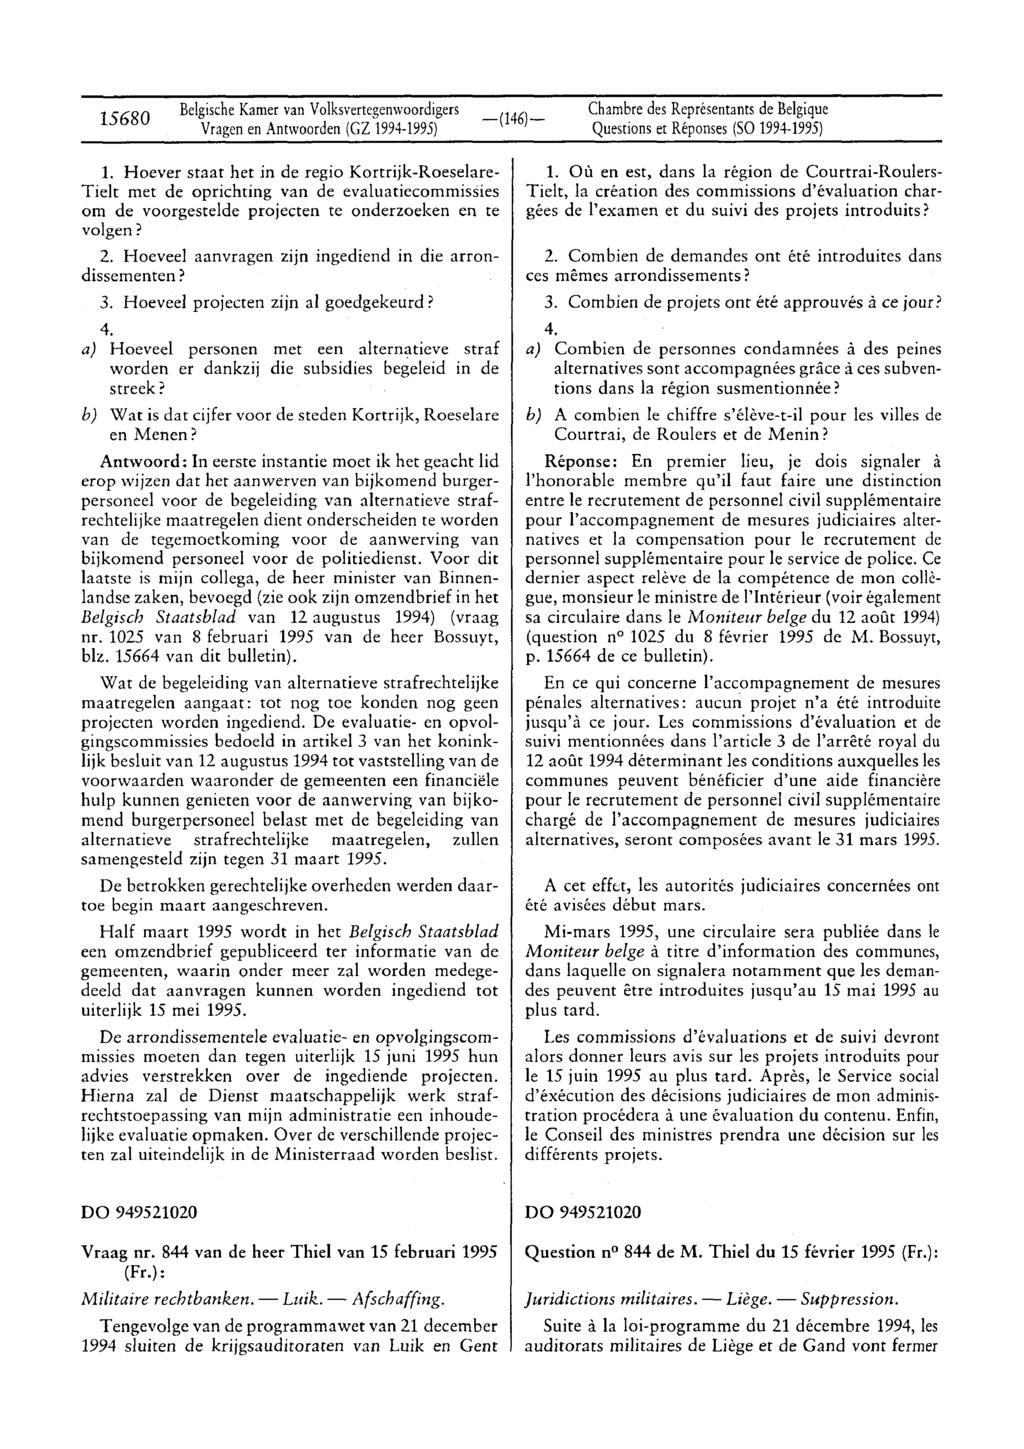 15680 BelgischeKamer van Volksvertegenwoordigers Vragenen Antwoorden (GZ 1994-1995) Questions et Réponses (SO 1994-1995) 1.